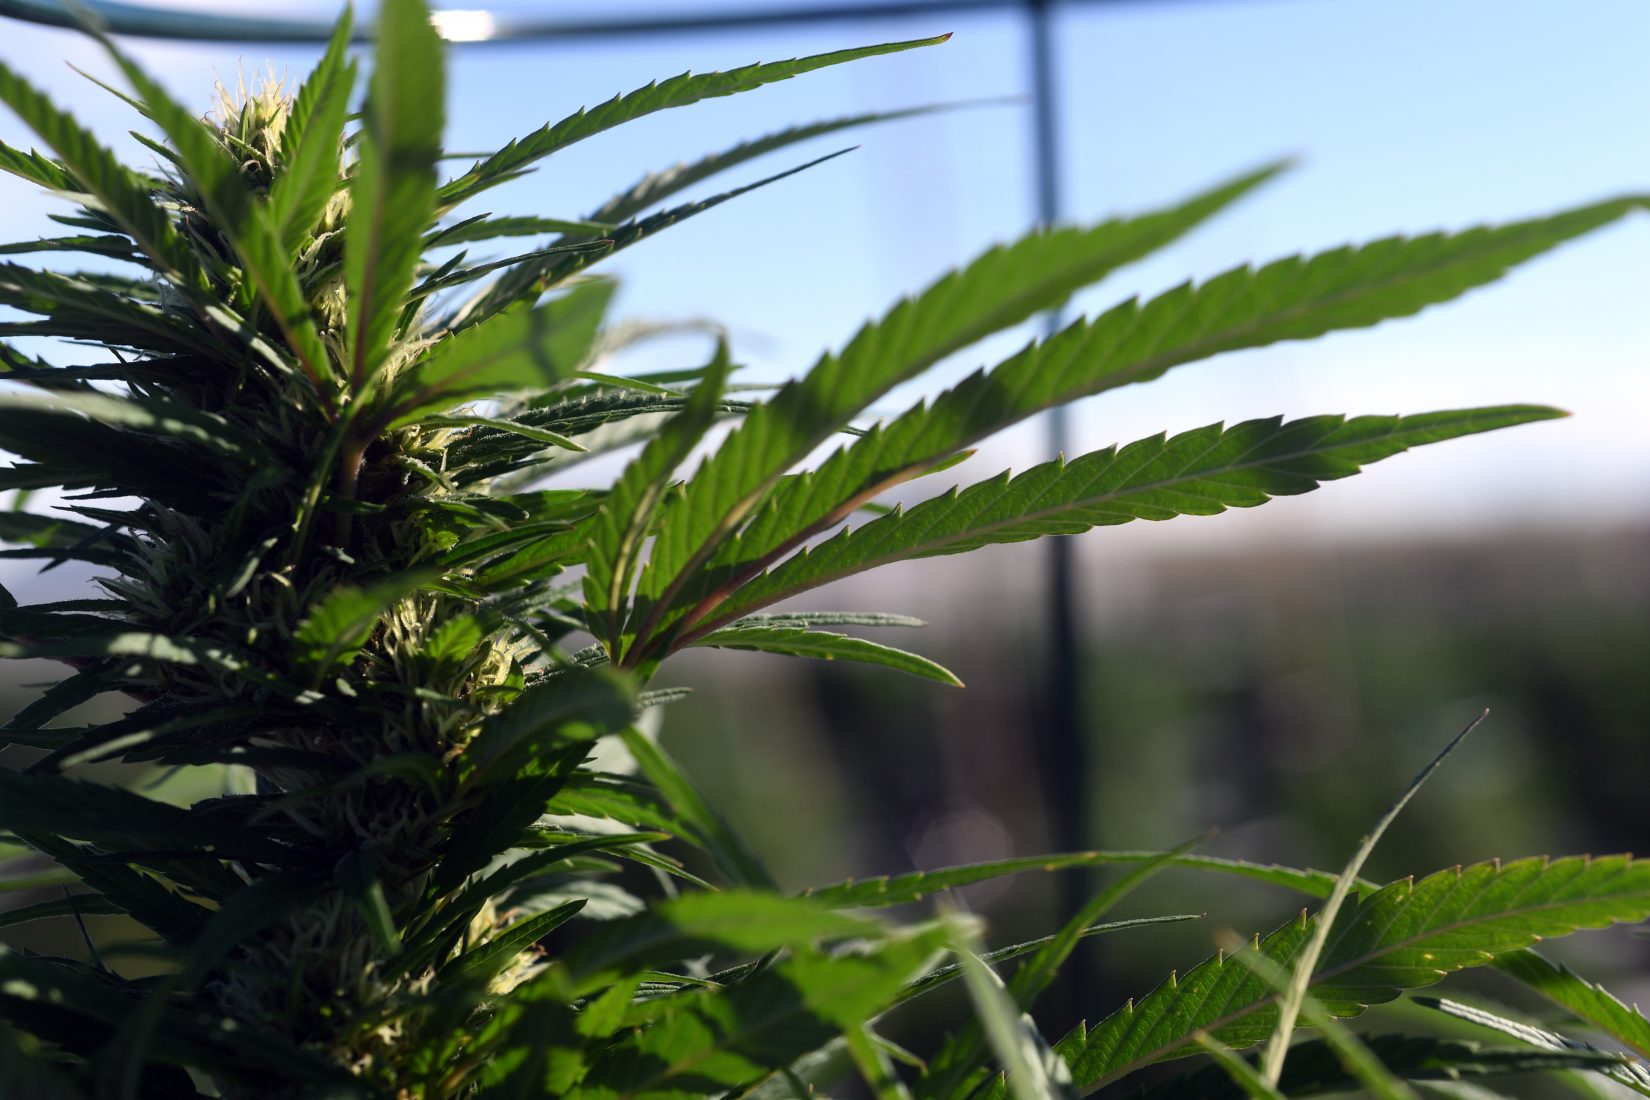 Outdoor marijuana grow in Pueblo County, Colorado